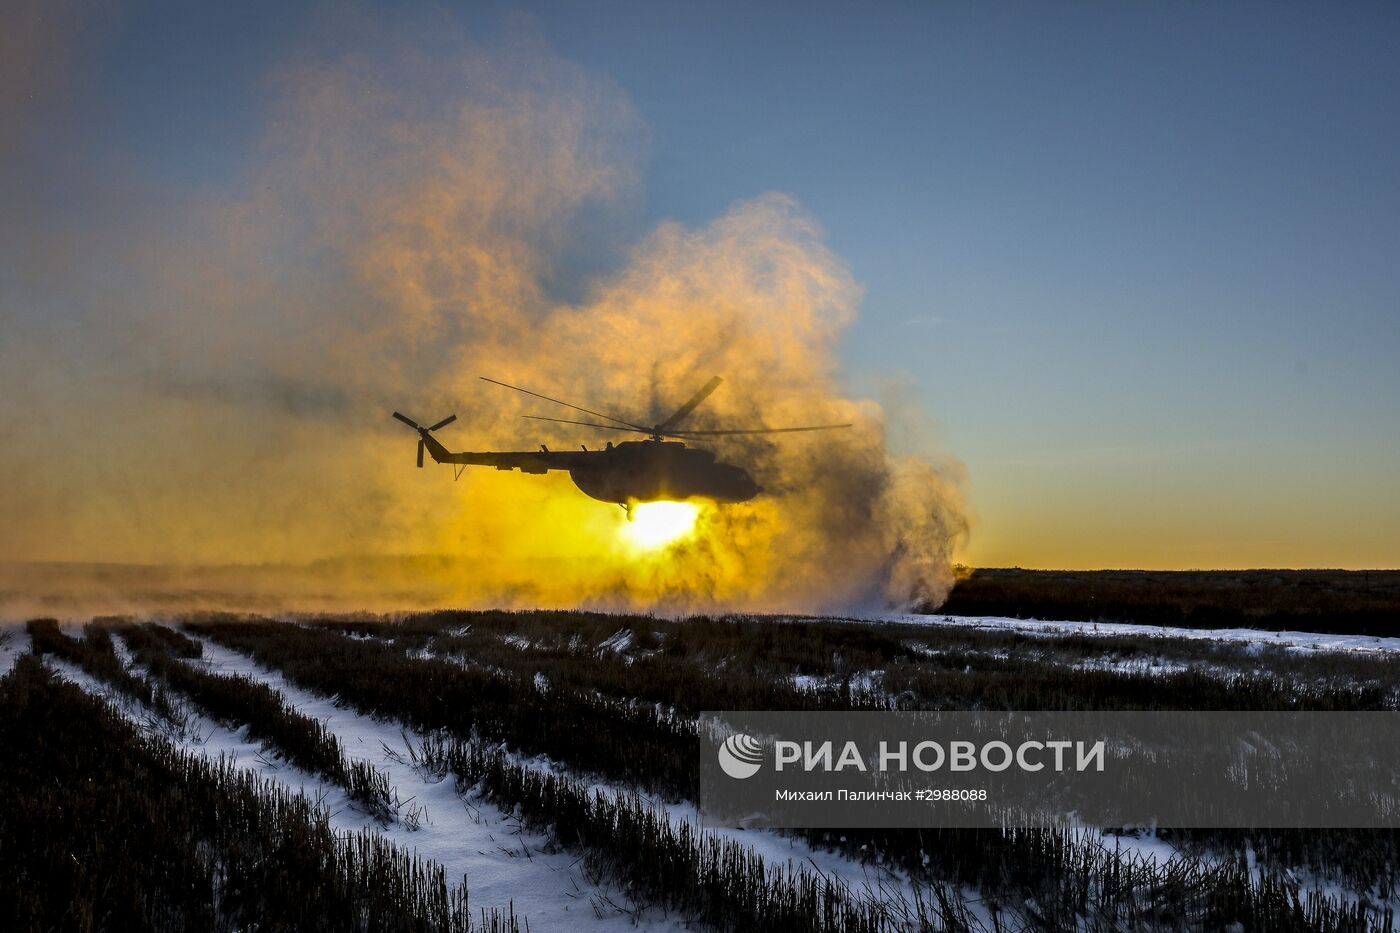 Президент Украины П. Порошенко проинспектировал опорный пункт в районе Горловки